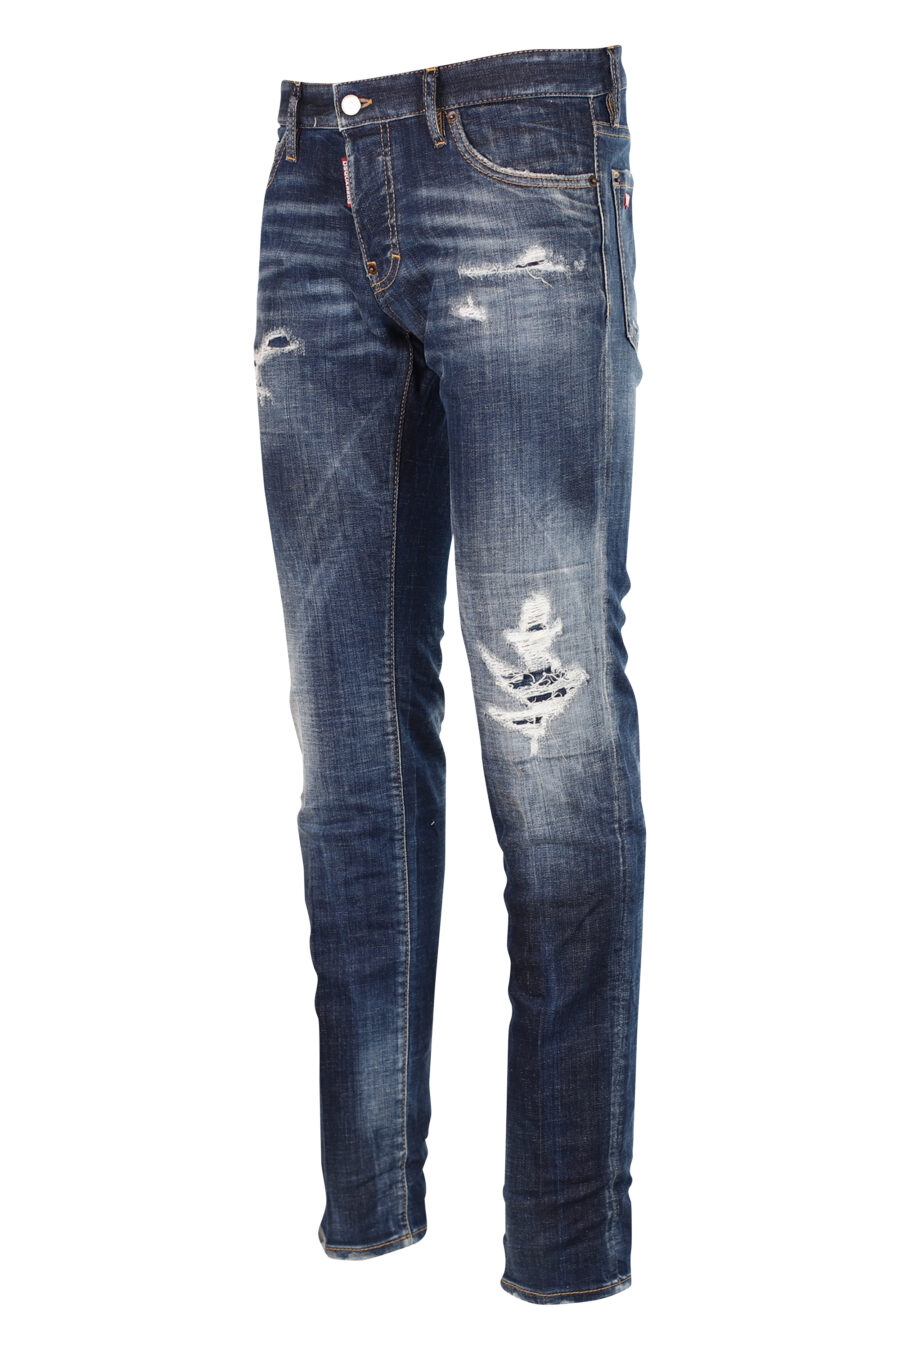 Calças de ganga "Slim jean" azuis semi-usadas com rasgões - 8052134942789